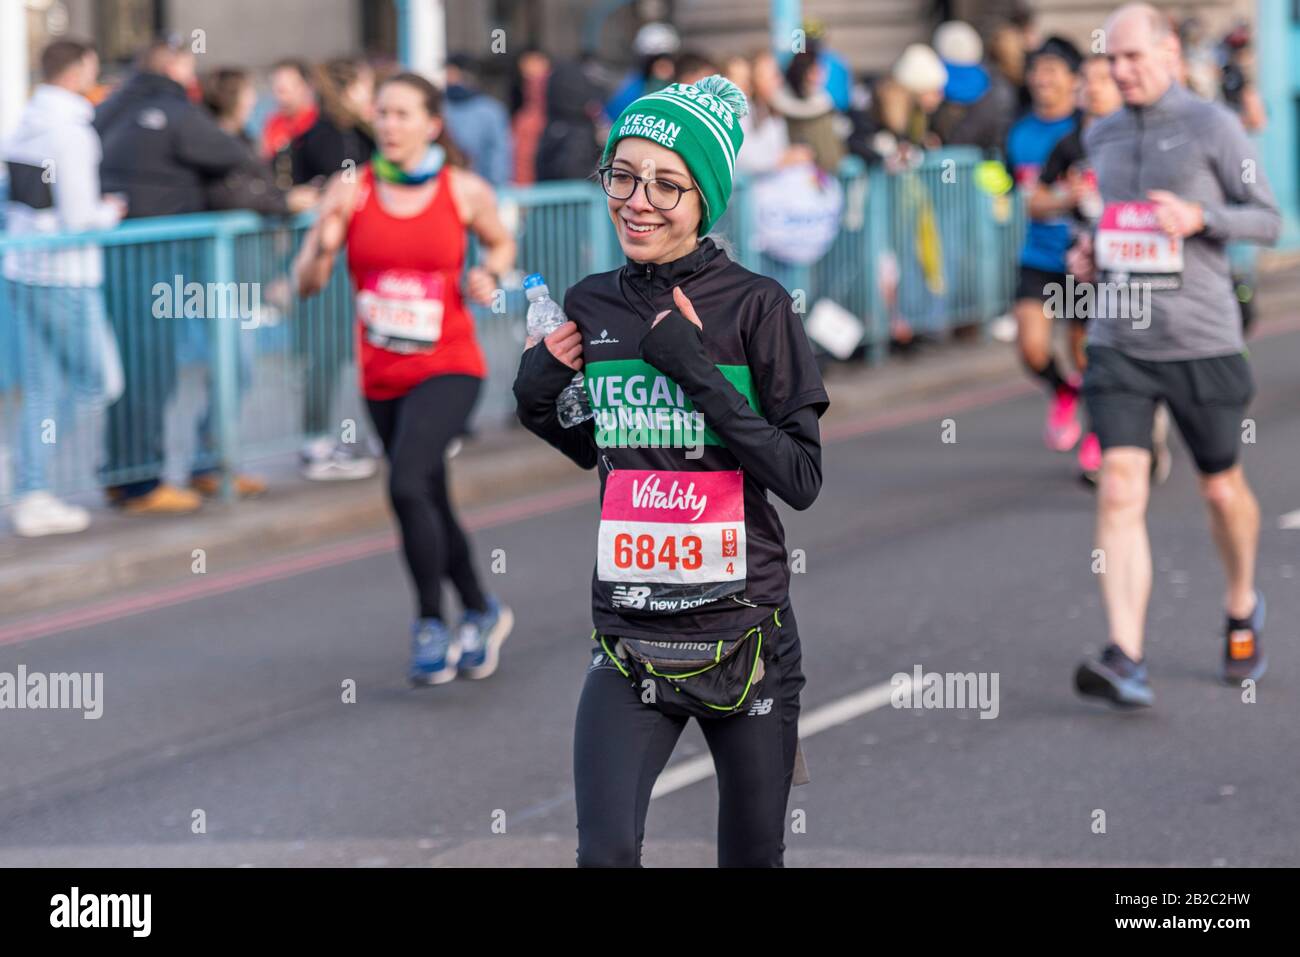 Bethany Ashman de Vegan Runners course au Royaume-Uni dans le Vitality Big Half marathon croisant Tower Bridge, Londres, Royaume-Uni. Mince et skinny, coureur femelle Banque D'Images